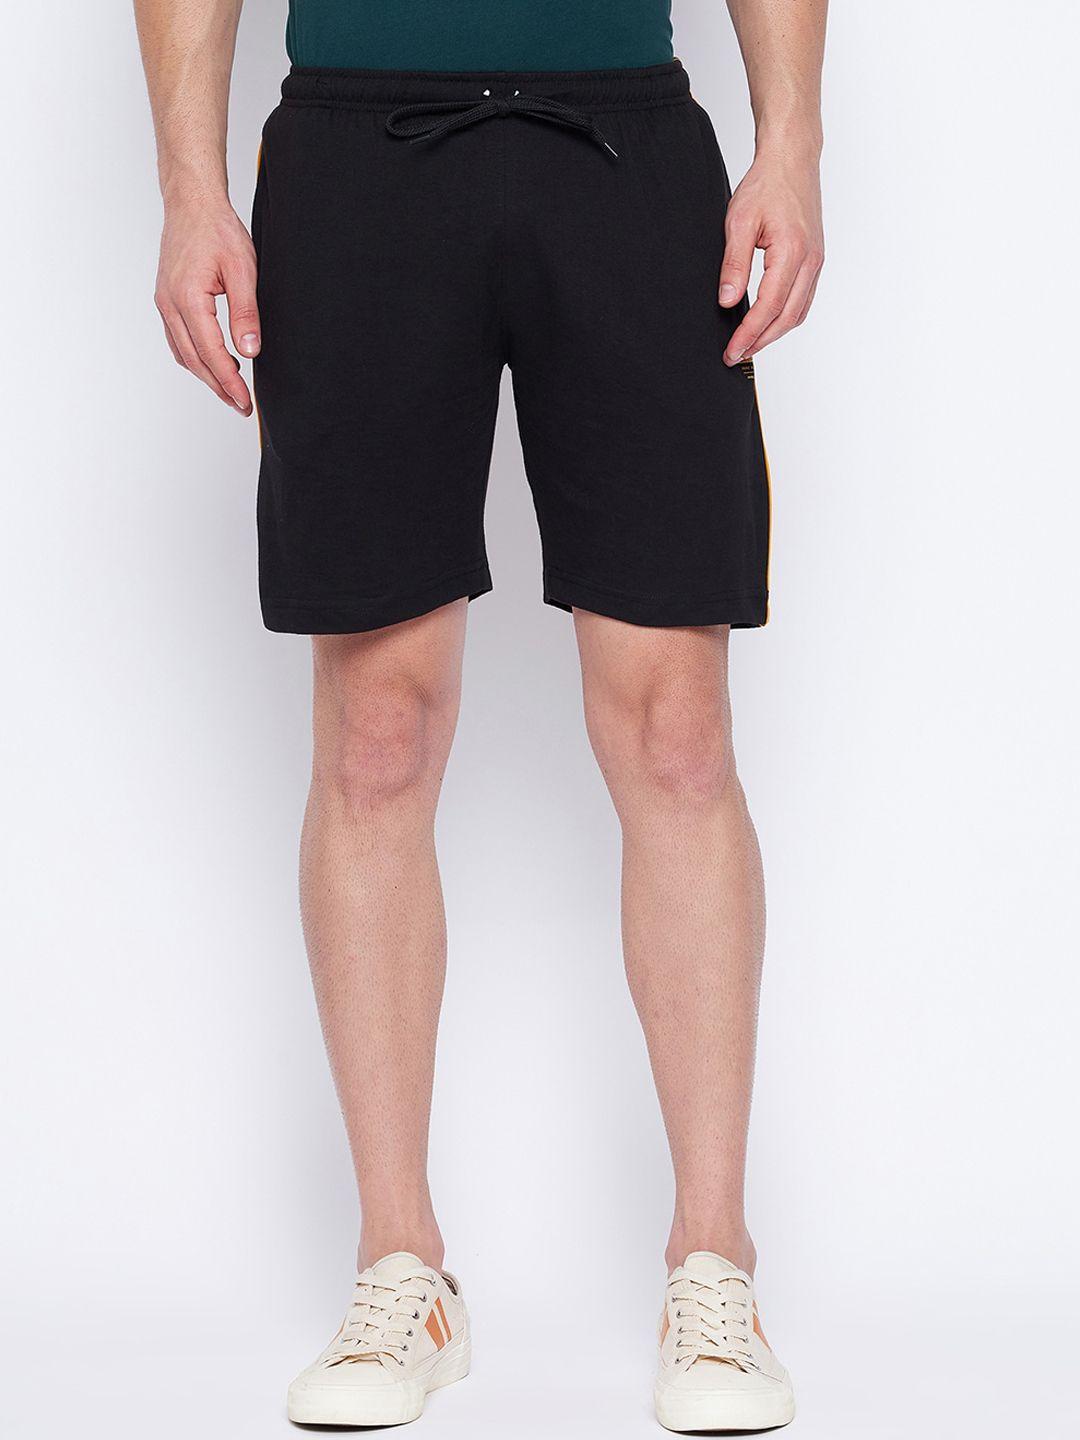 duke men black cotton sports shorts